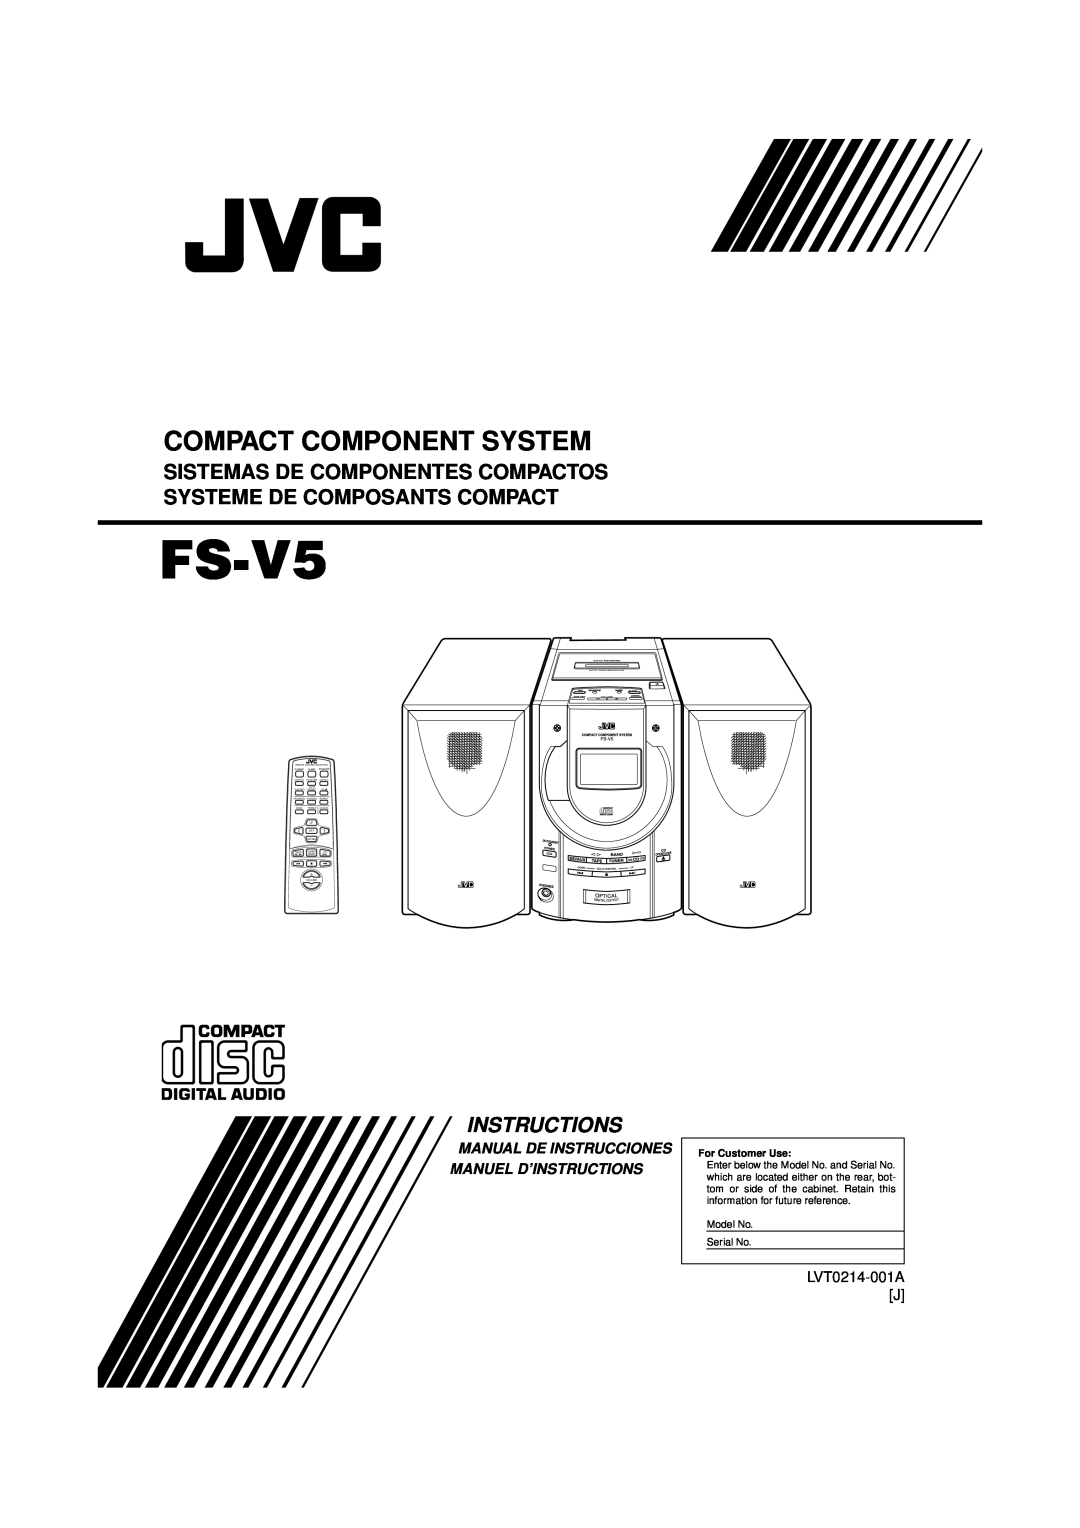 JVC FS-V5 manual Manual De Instrucciones Manuel D’Instructions, Compact Component System, LVT0214-001AJ, For Customer Use 